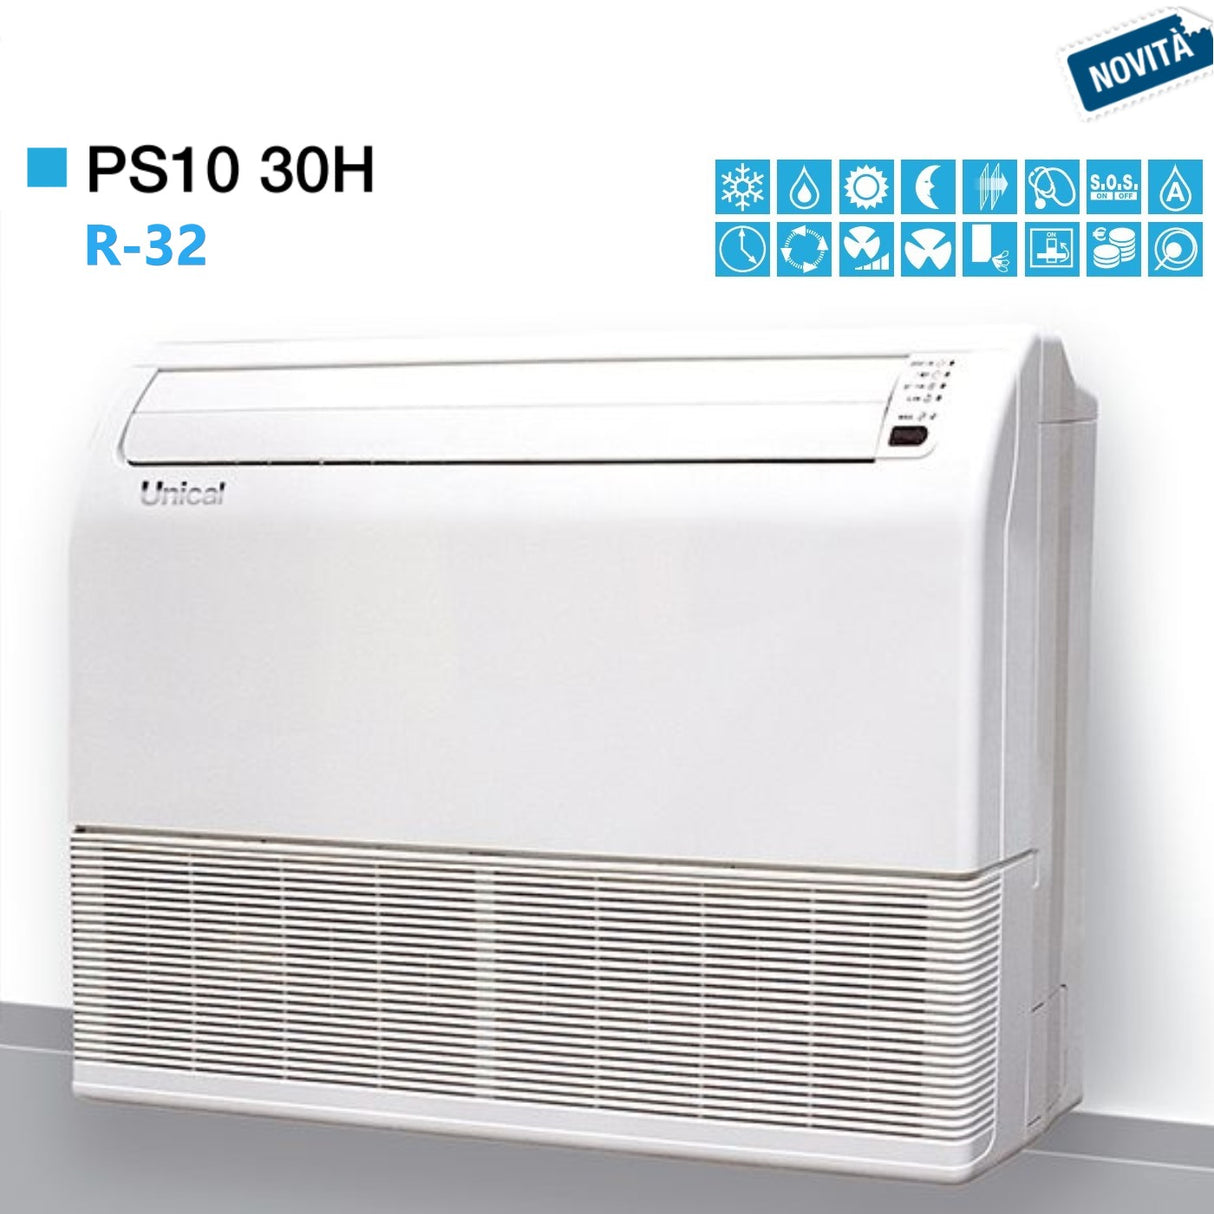 immagine-1-unical-condizionatore-climatizzatore-unical-soffittopavimento-30000-btu-ps10-30h-classe-aa-gas-r-32-novita